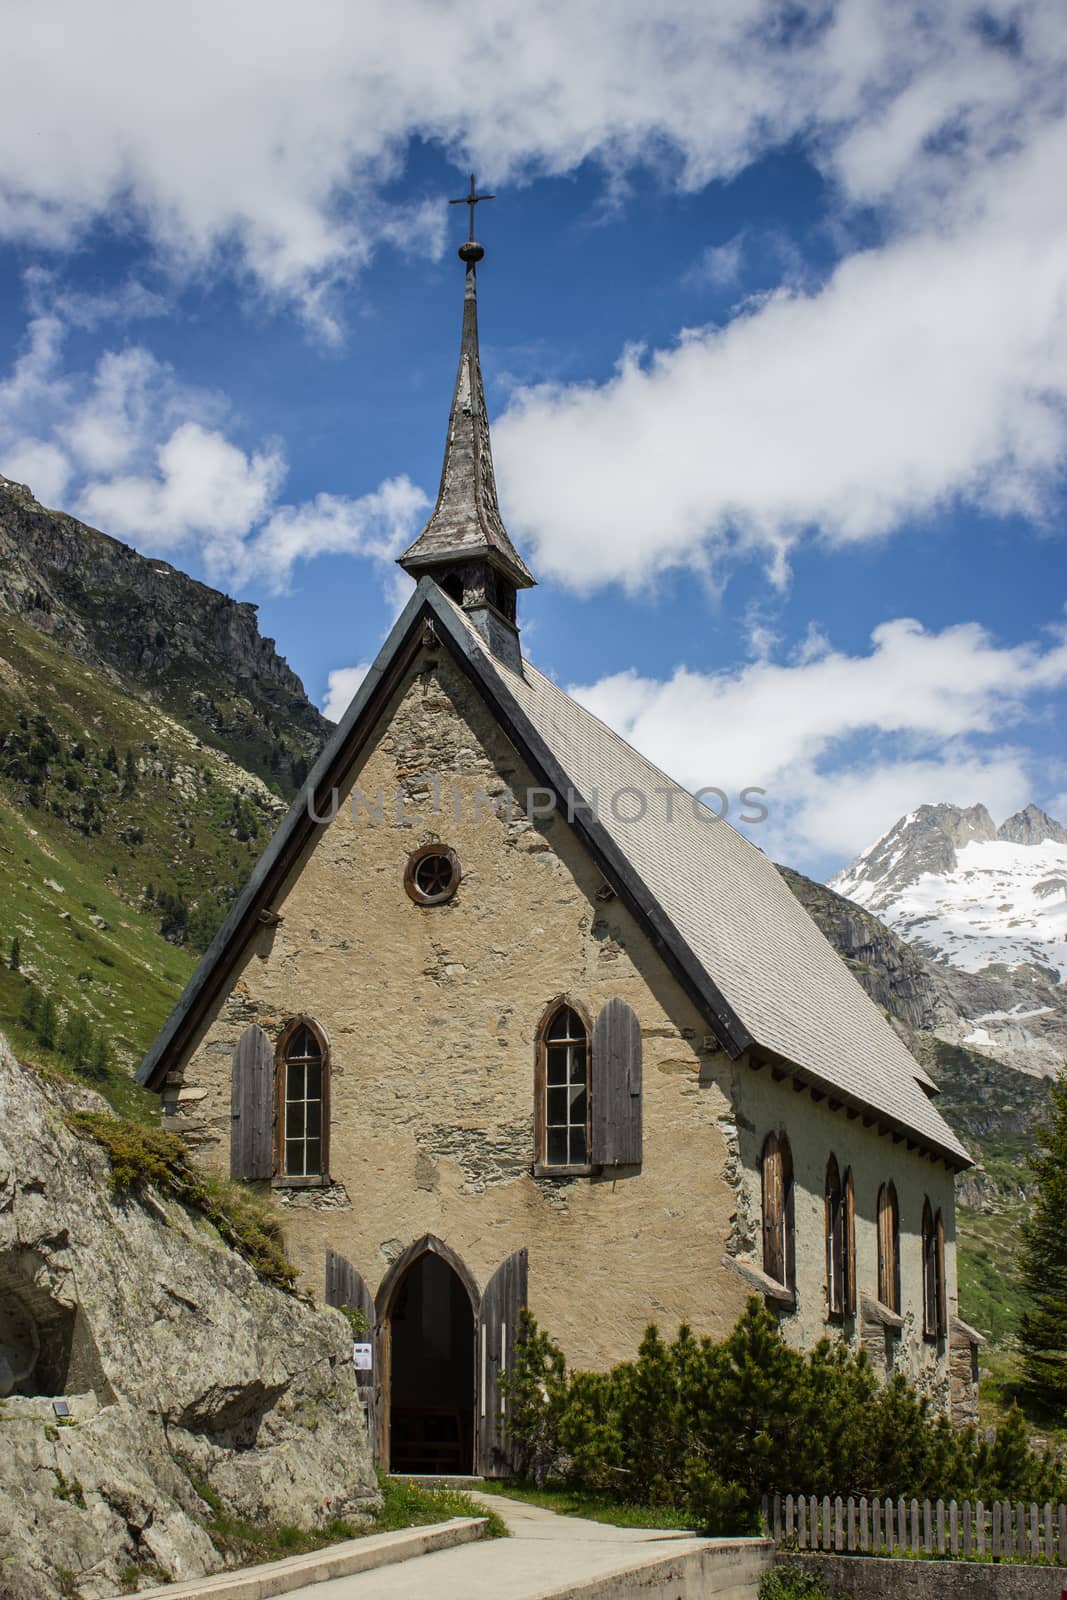 Switzerland, church among alpine mountains